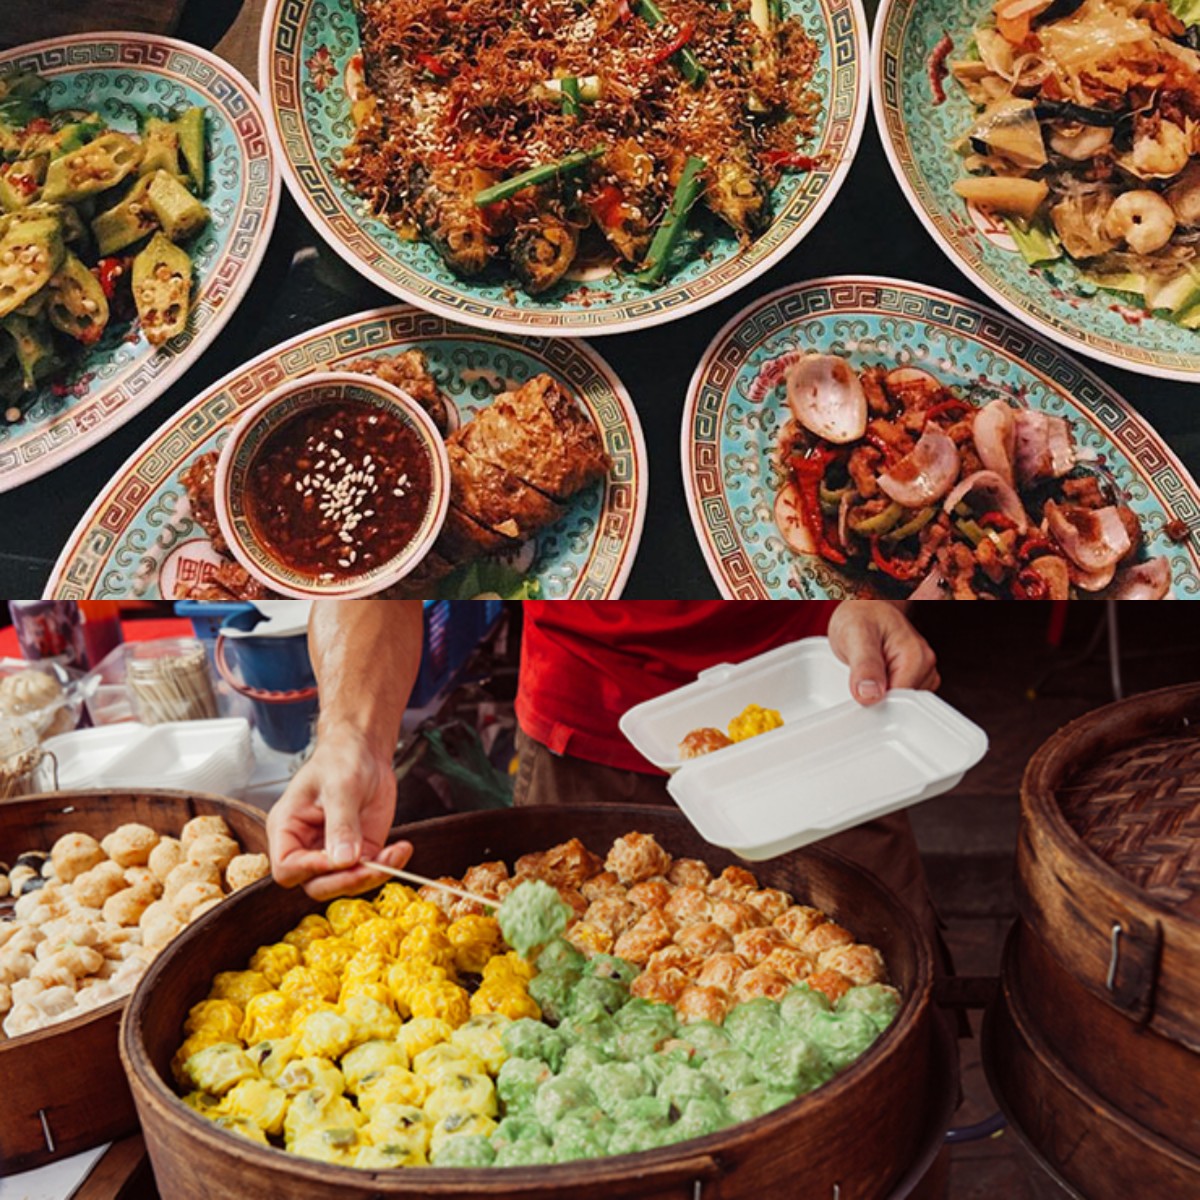 Yakin Gak Mau Cobai? Inilah 7 Rekomendasi Tempat Wisata Kuliner di Kuala Lumpur Favorit Para Wisatawan 